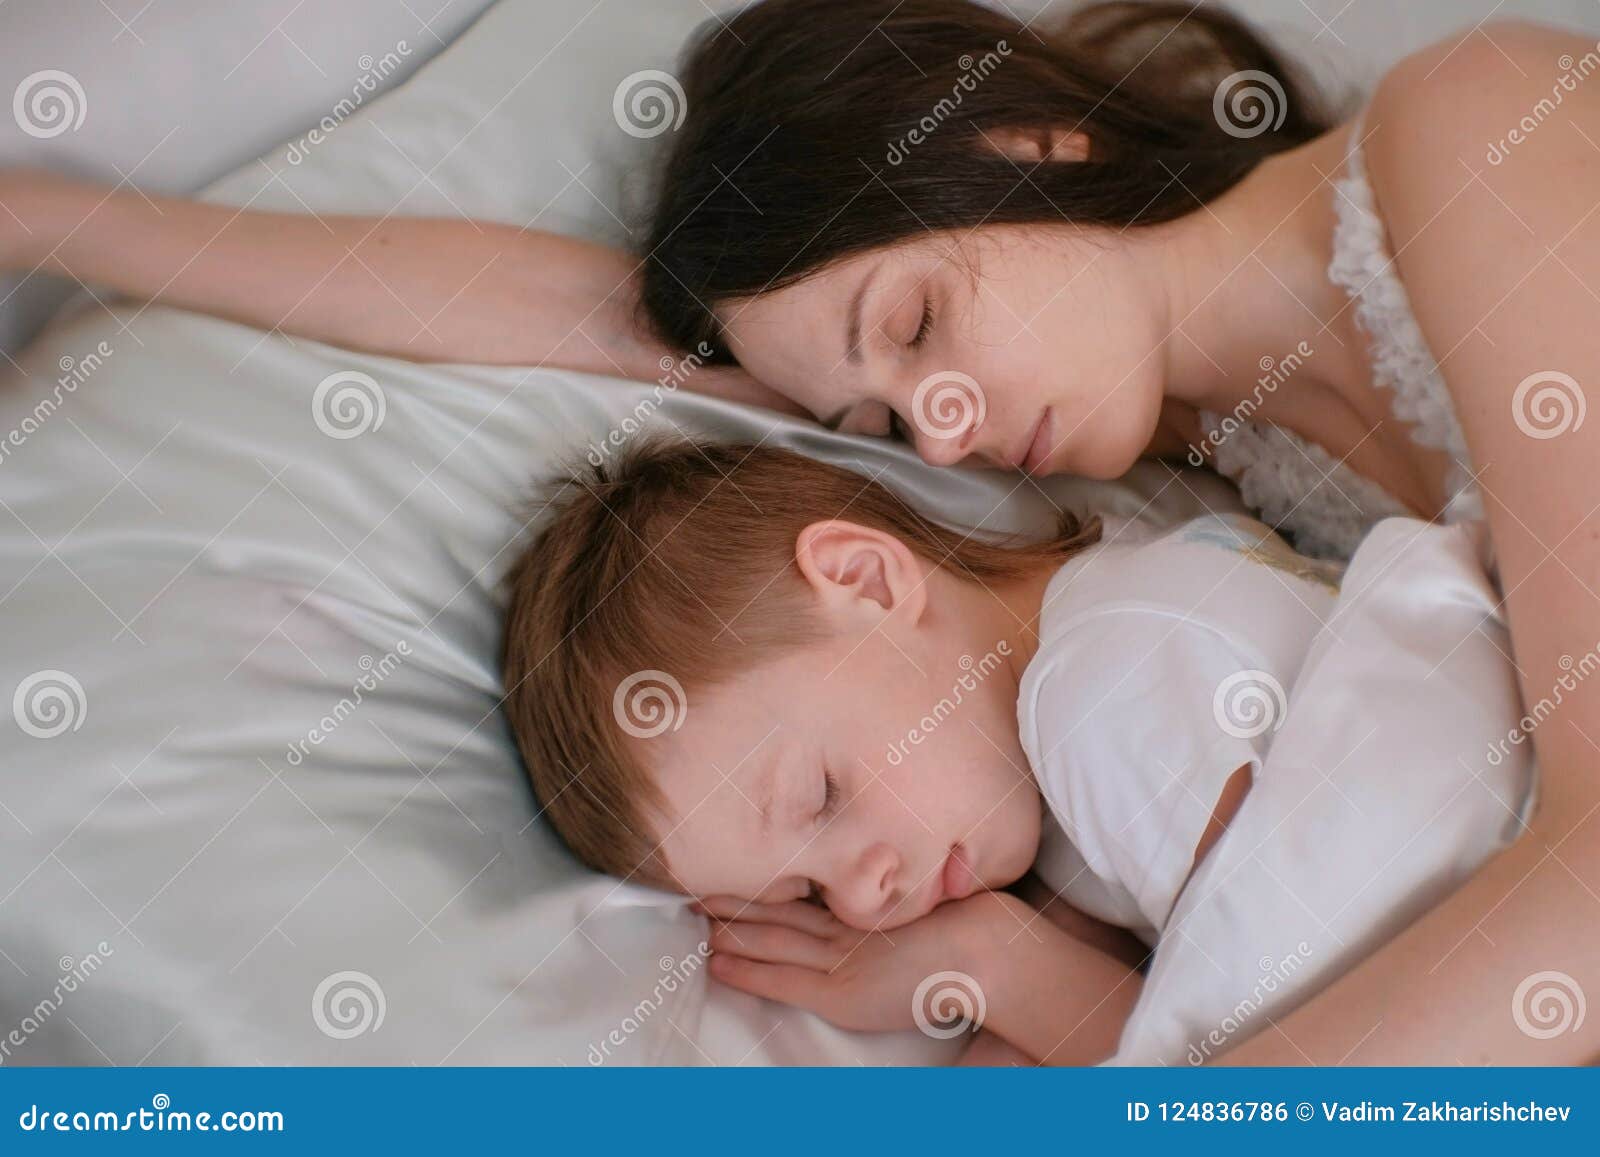 Жена в постели сына. Спящий подросток и мама. Мать с сыном спят в кровати. Усыпляет сына. Сын с мамой спят и обнимаются.